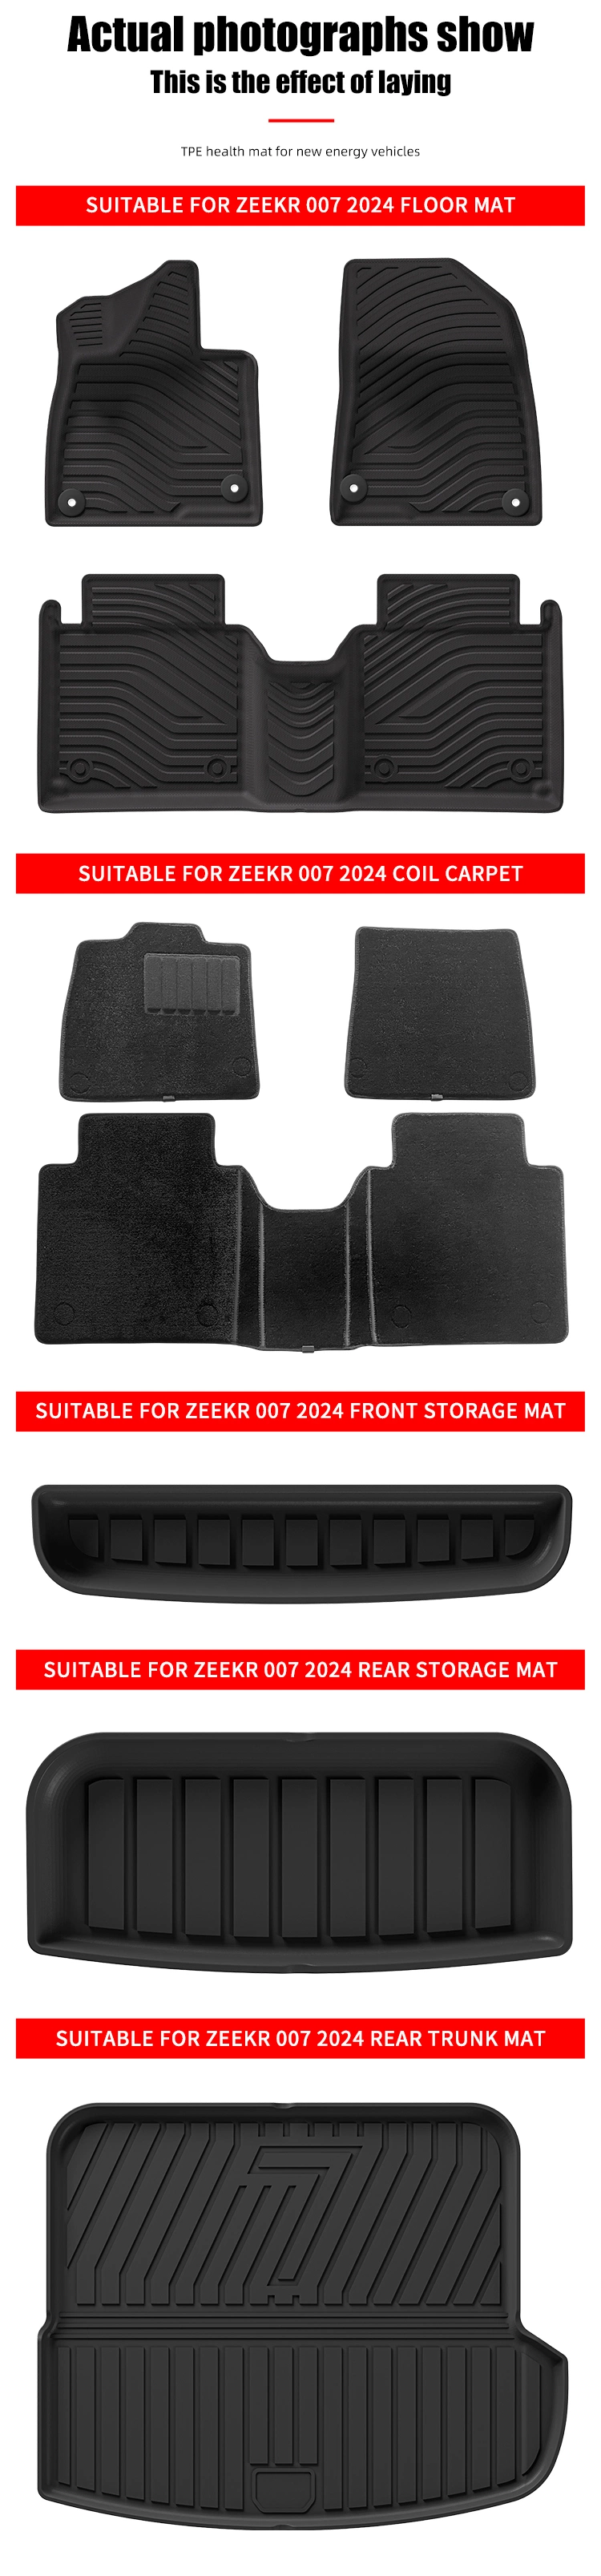 Rear Storage Mat for Zeekr 007 2024